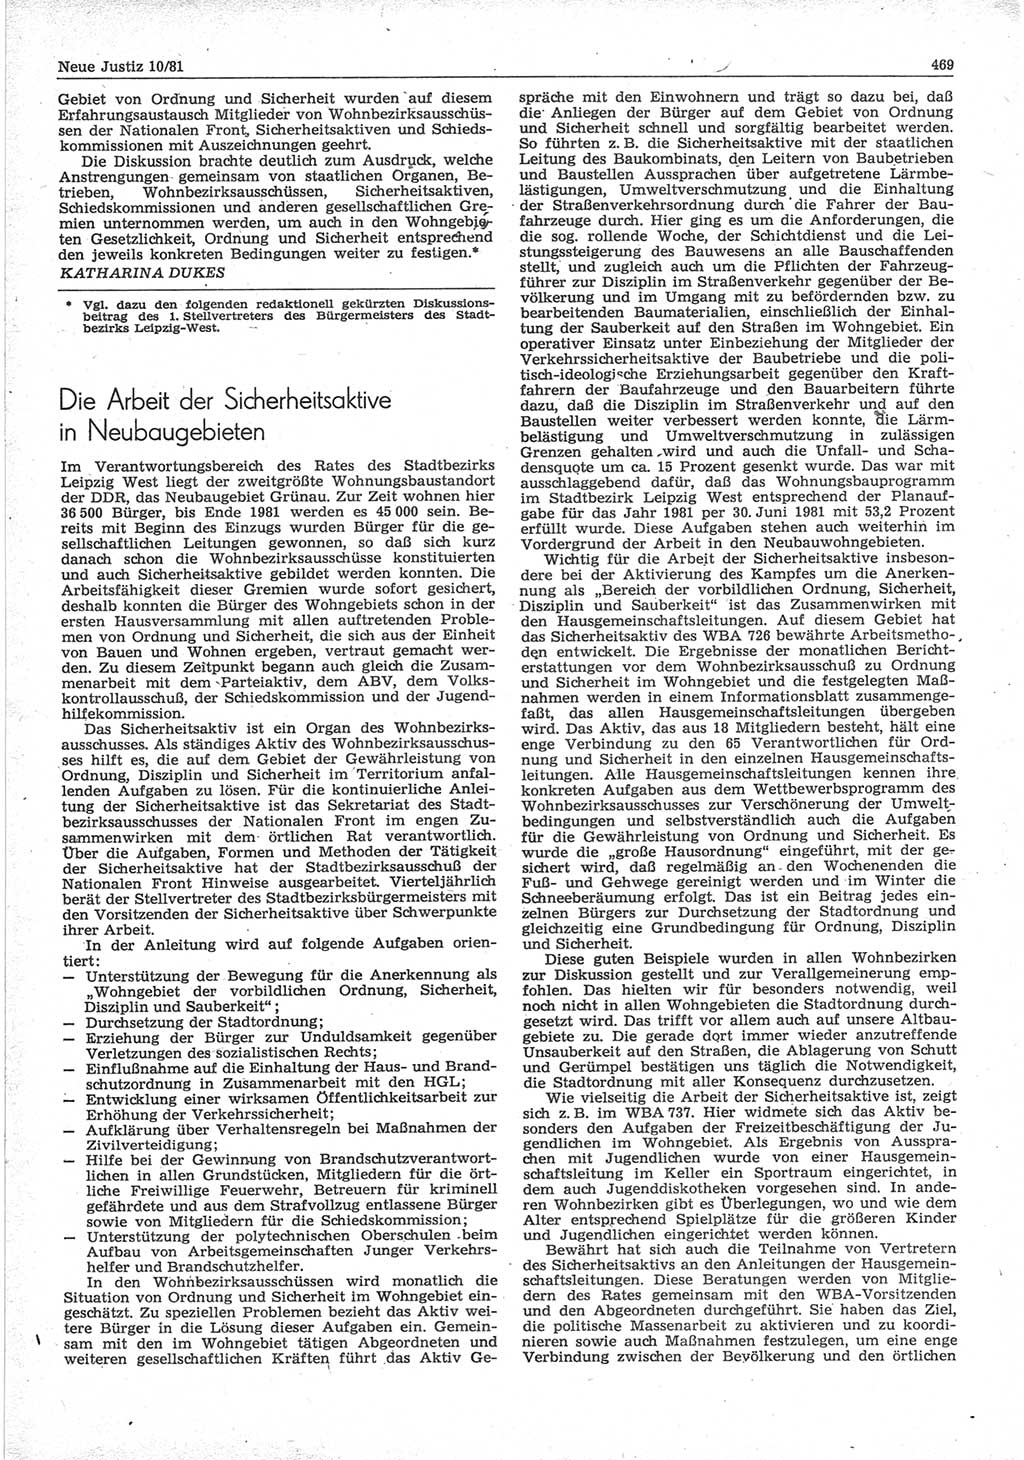 Neue Justiz (NJ), Zeitschrift für sozialistisches Recht und Gesetzlichkeit [Deutsche Demokratische Republik (DDR)], 35. Jahrgang 1981, Seite 469 (NJ DDR 1981, S. 469)